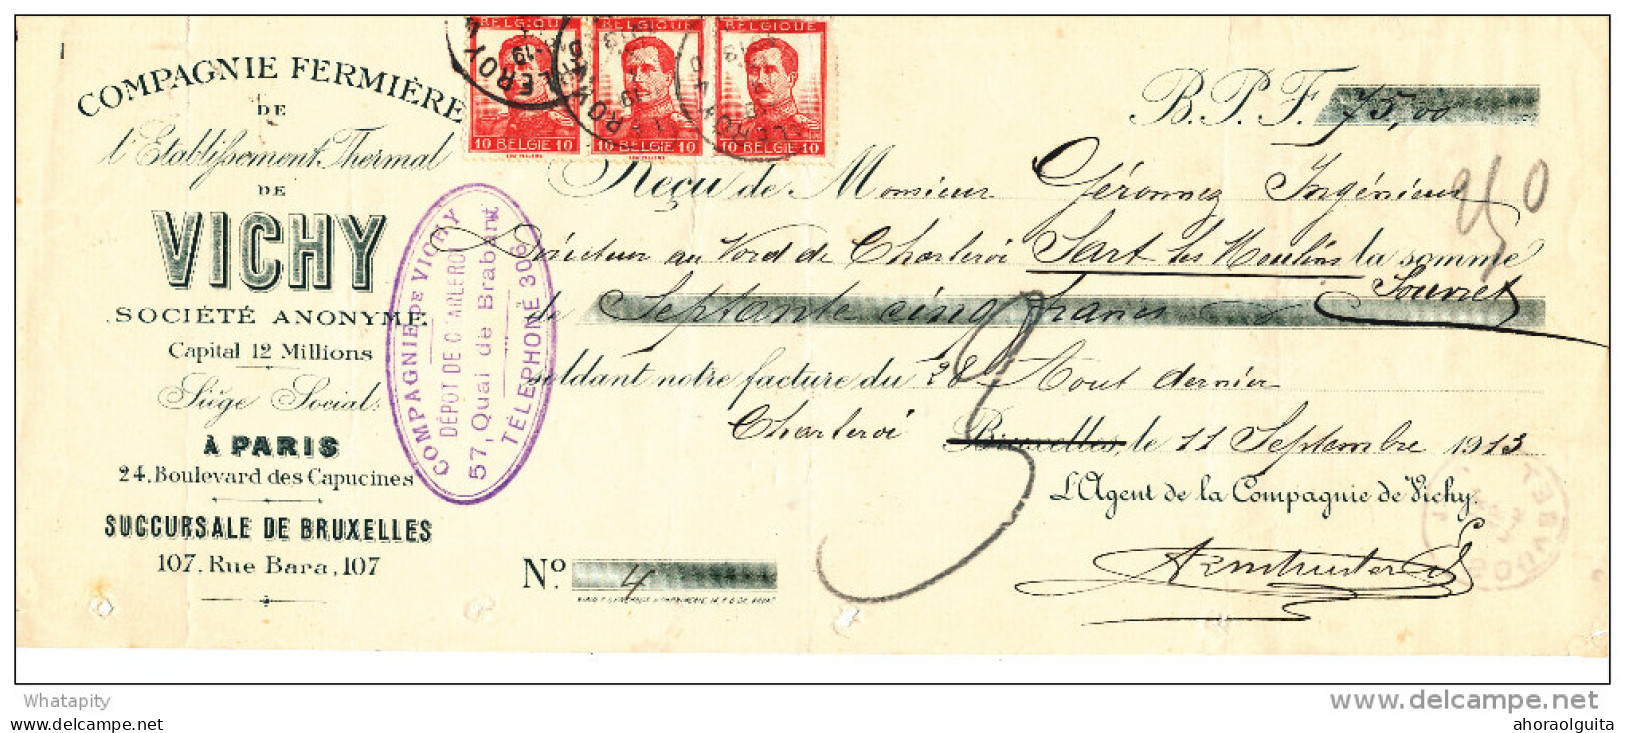 Document Financier Via Poste - TP Pellens 10 C X 3 CHARLEROY 1913 - Eau Minérale VICHY  -- VV392 - Bäderwesen